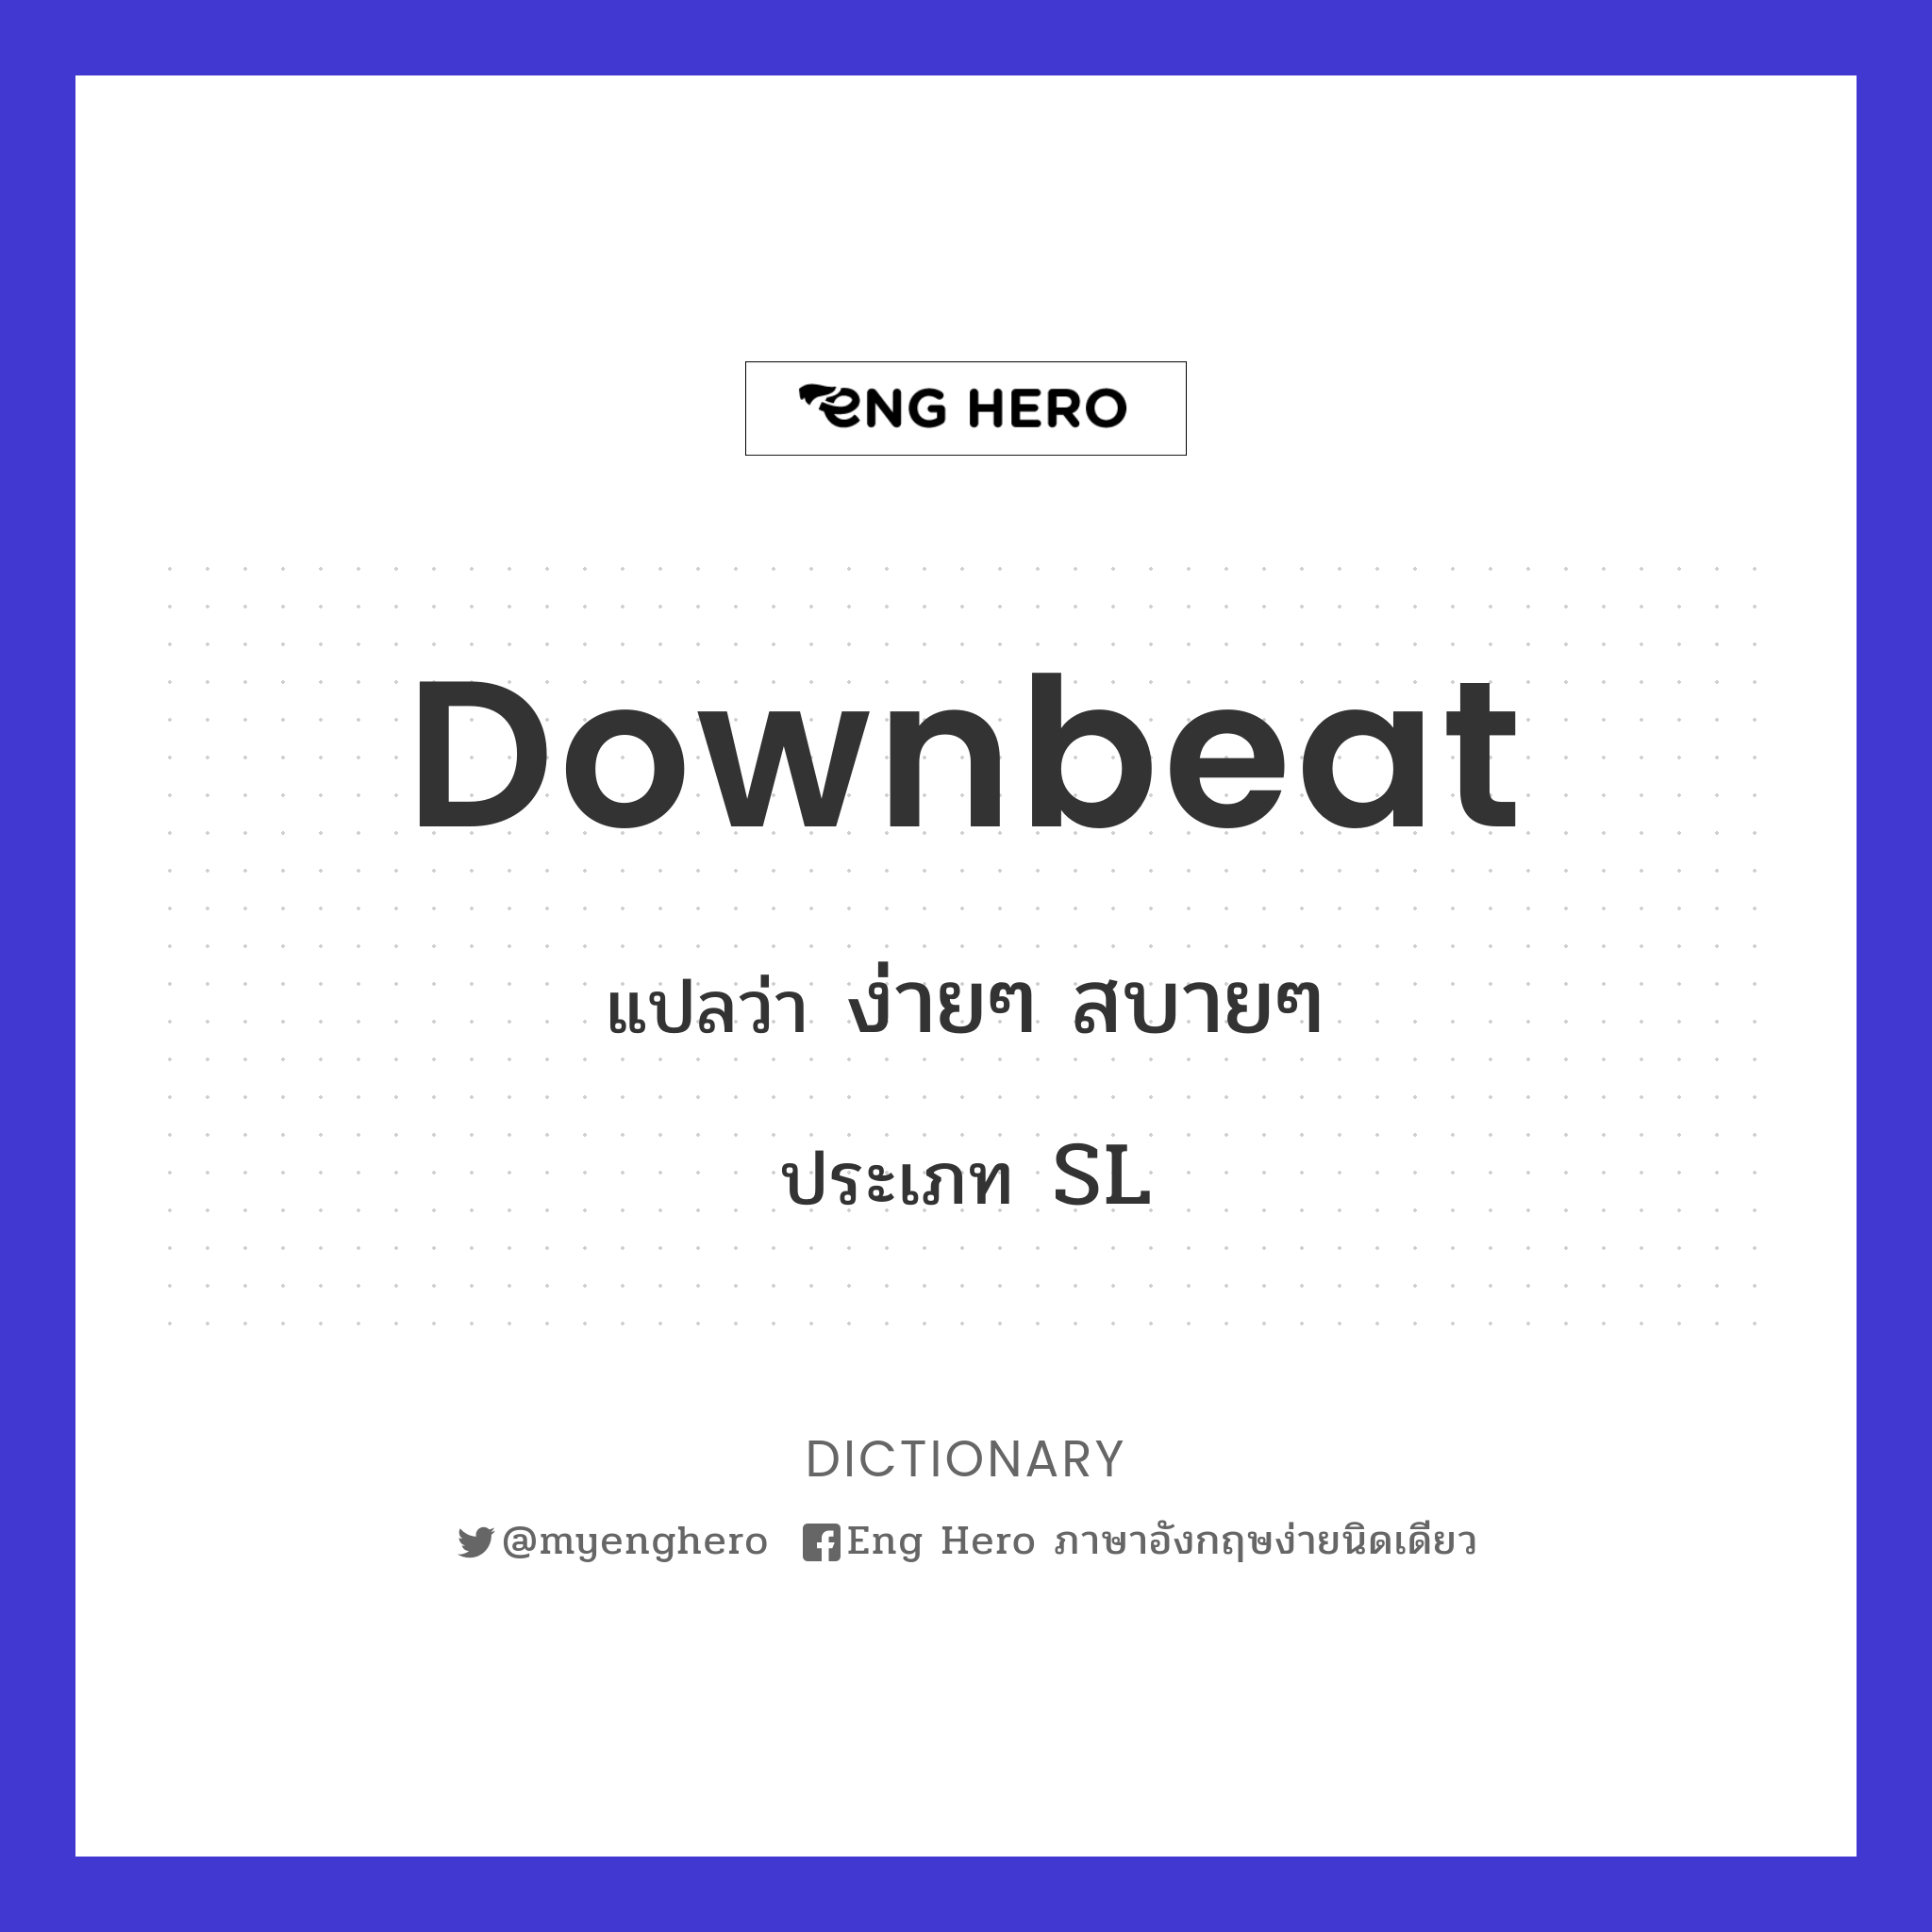 downbeat